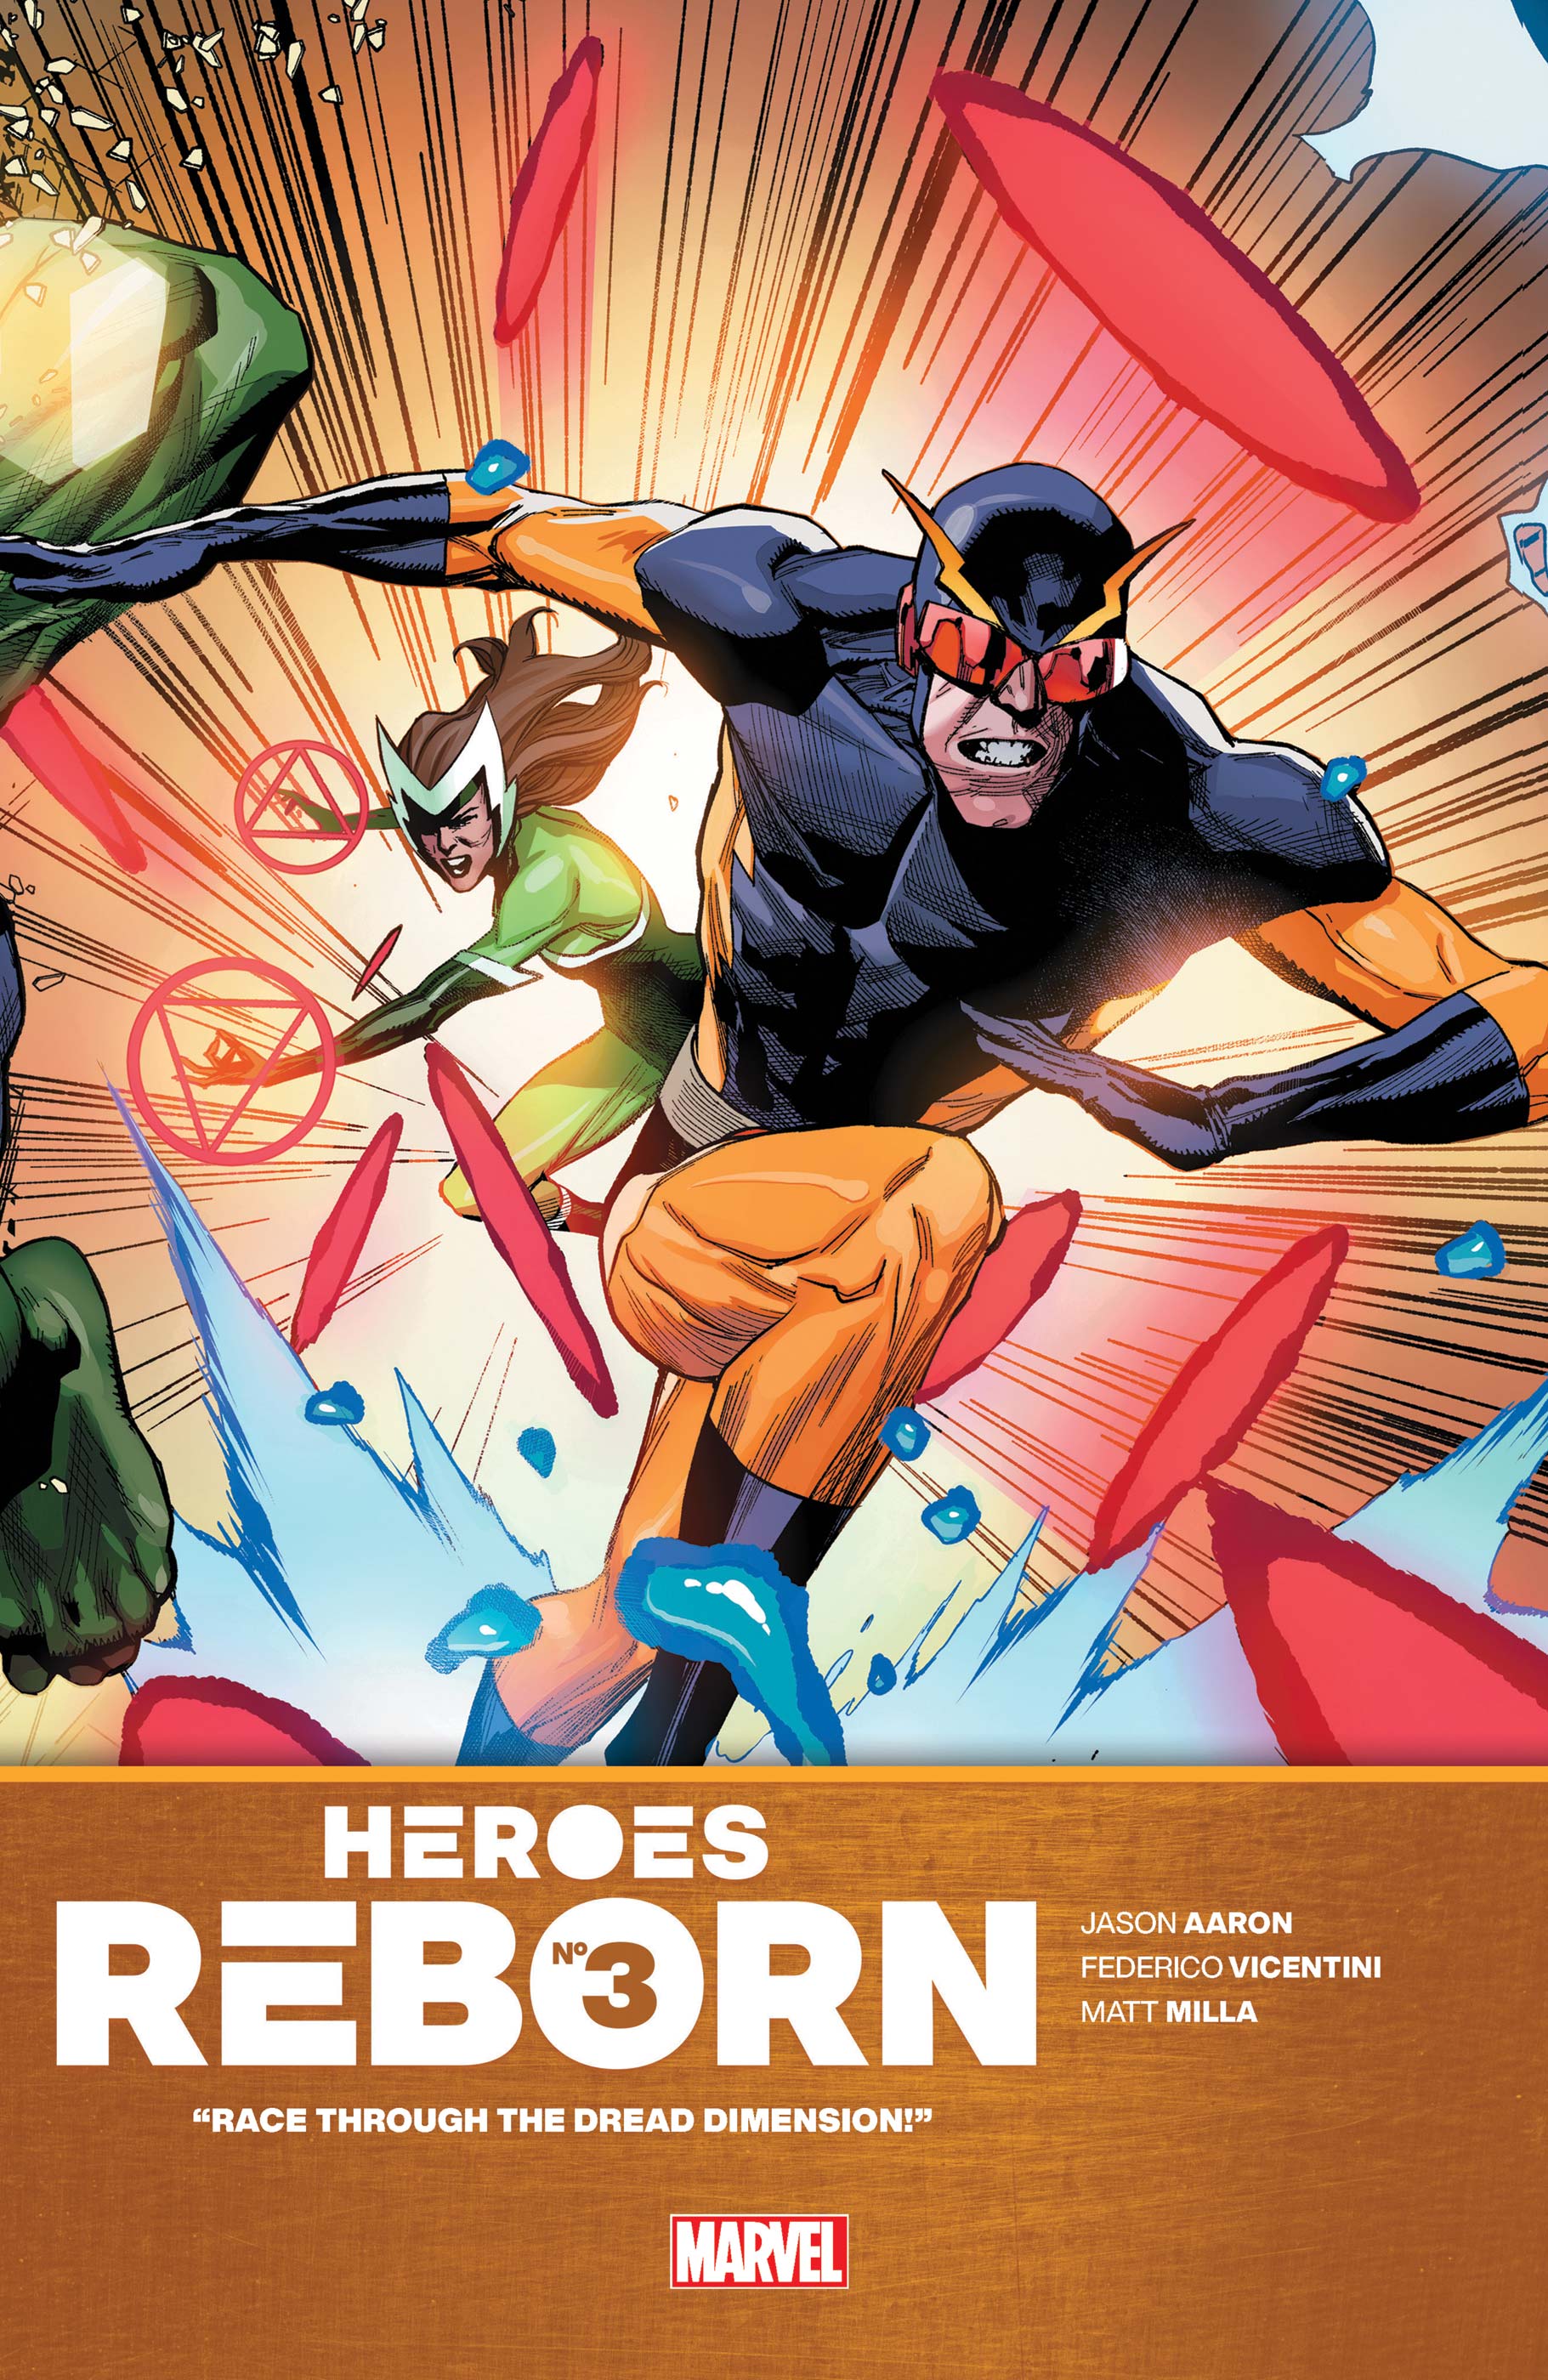 Heroes Reborn 21 3 Comic Issues Marvel